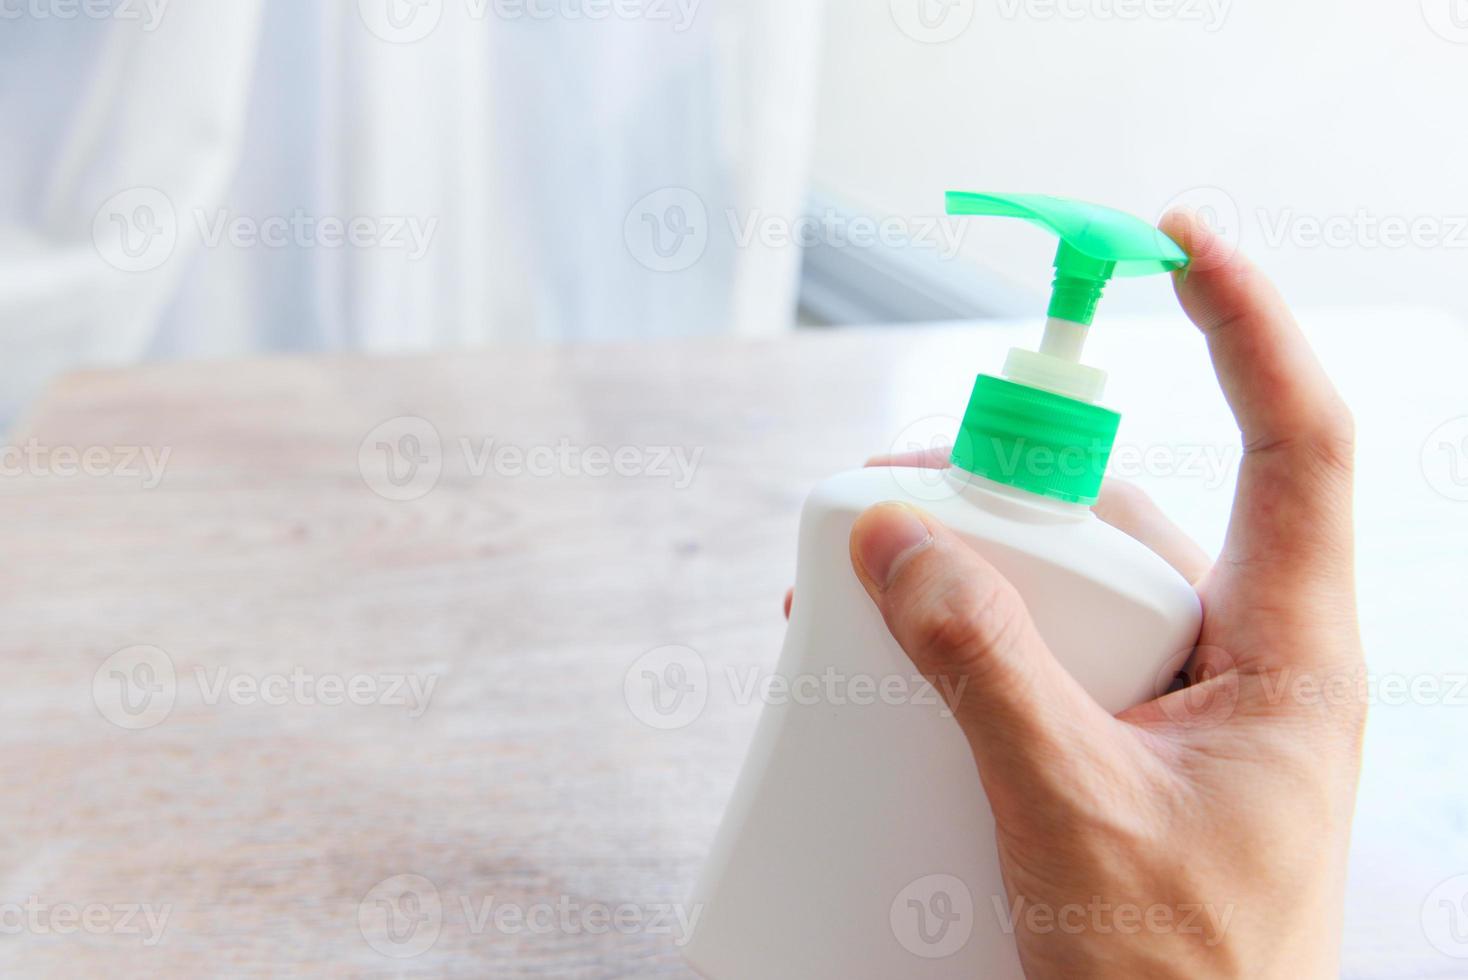 handdesinfecterend middel flesgel handen wassen hygiëne met alcoholgel of antibacteriële zeep ontsmettingsmiddel, covid-19 hygiëne voorkomen dat het virus zich verspreidt van ziektekiemen en bacteriën coronavirus preventie uitbraak foto